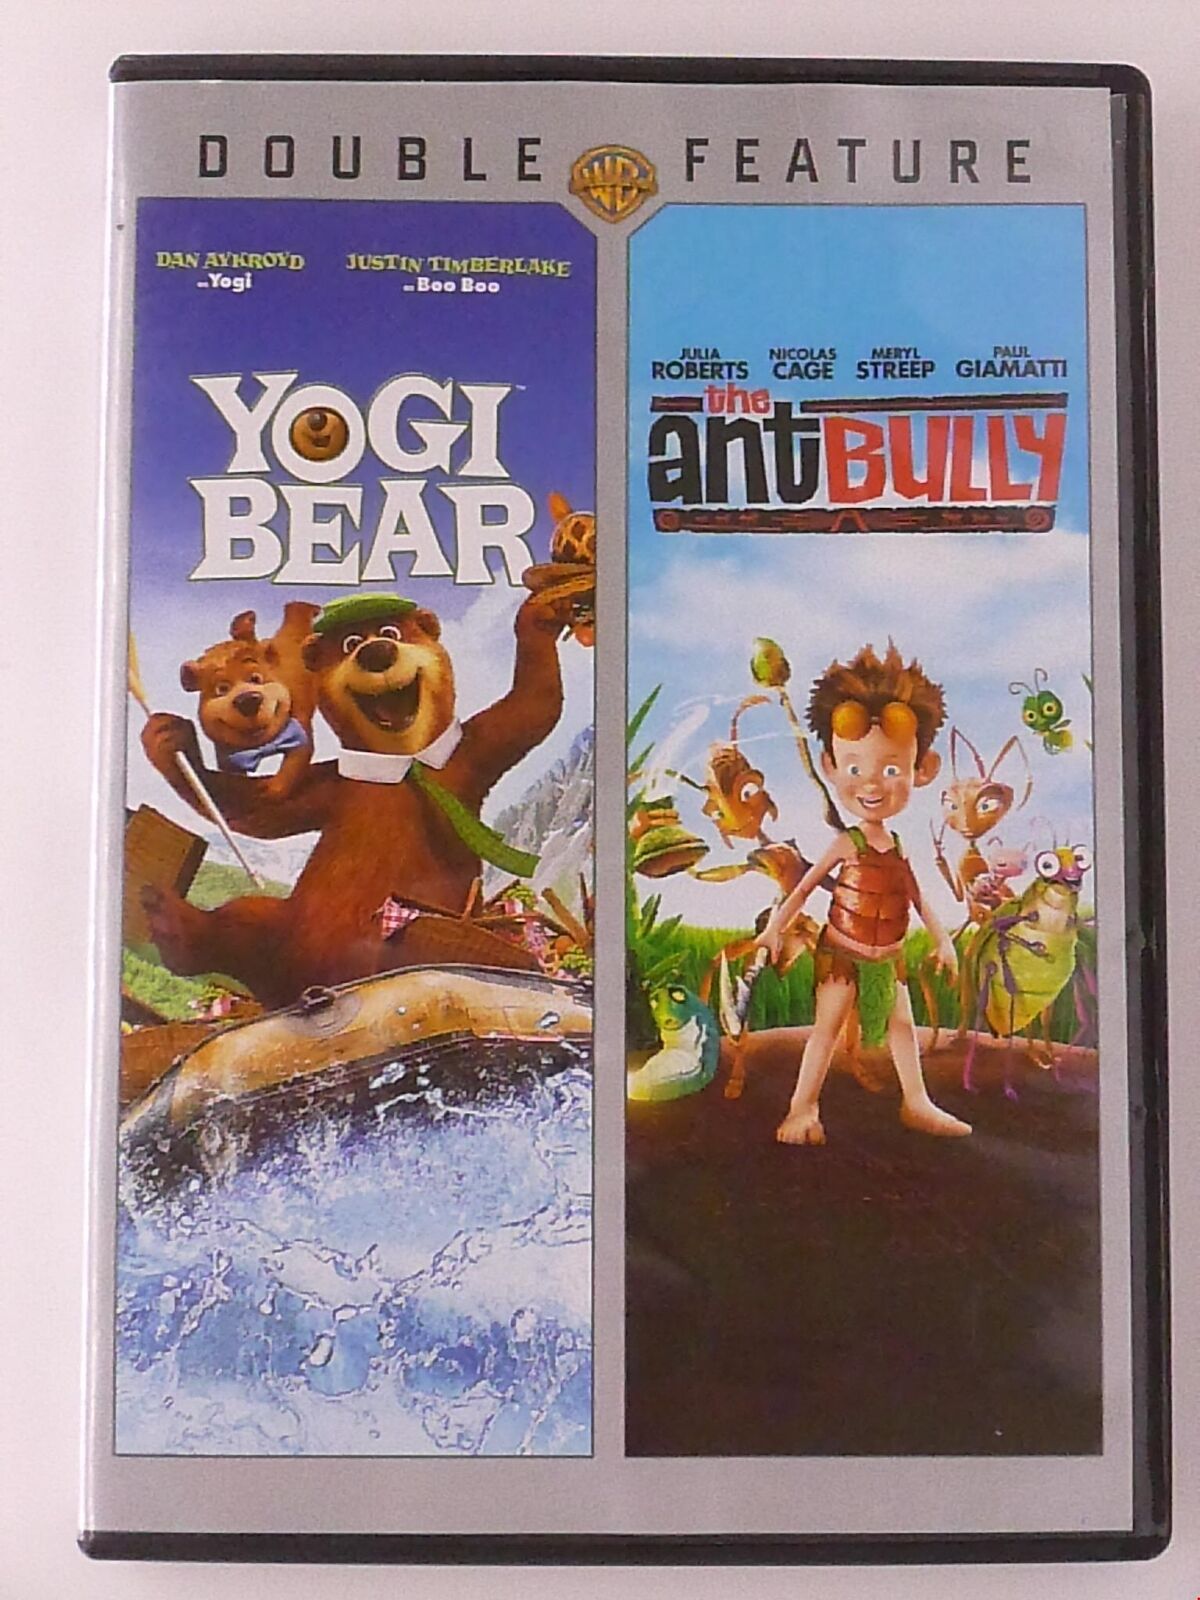 Yogi Bear - The Ant Bully (DVD, double feature) - J0514